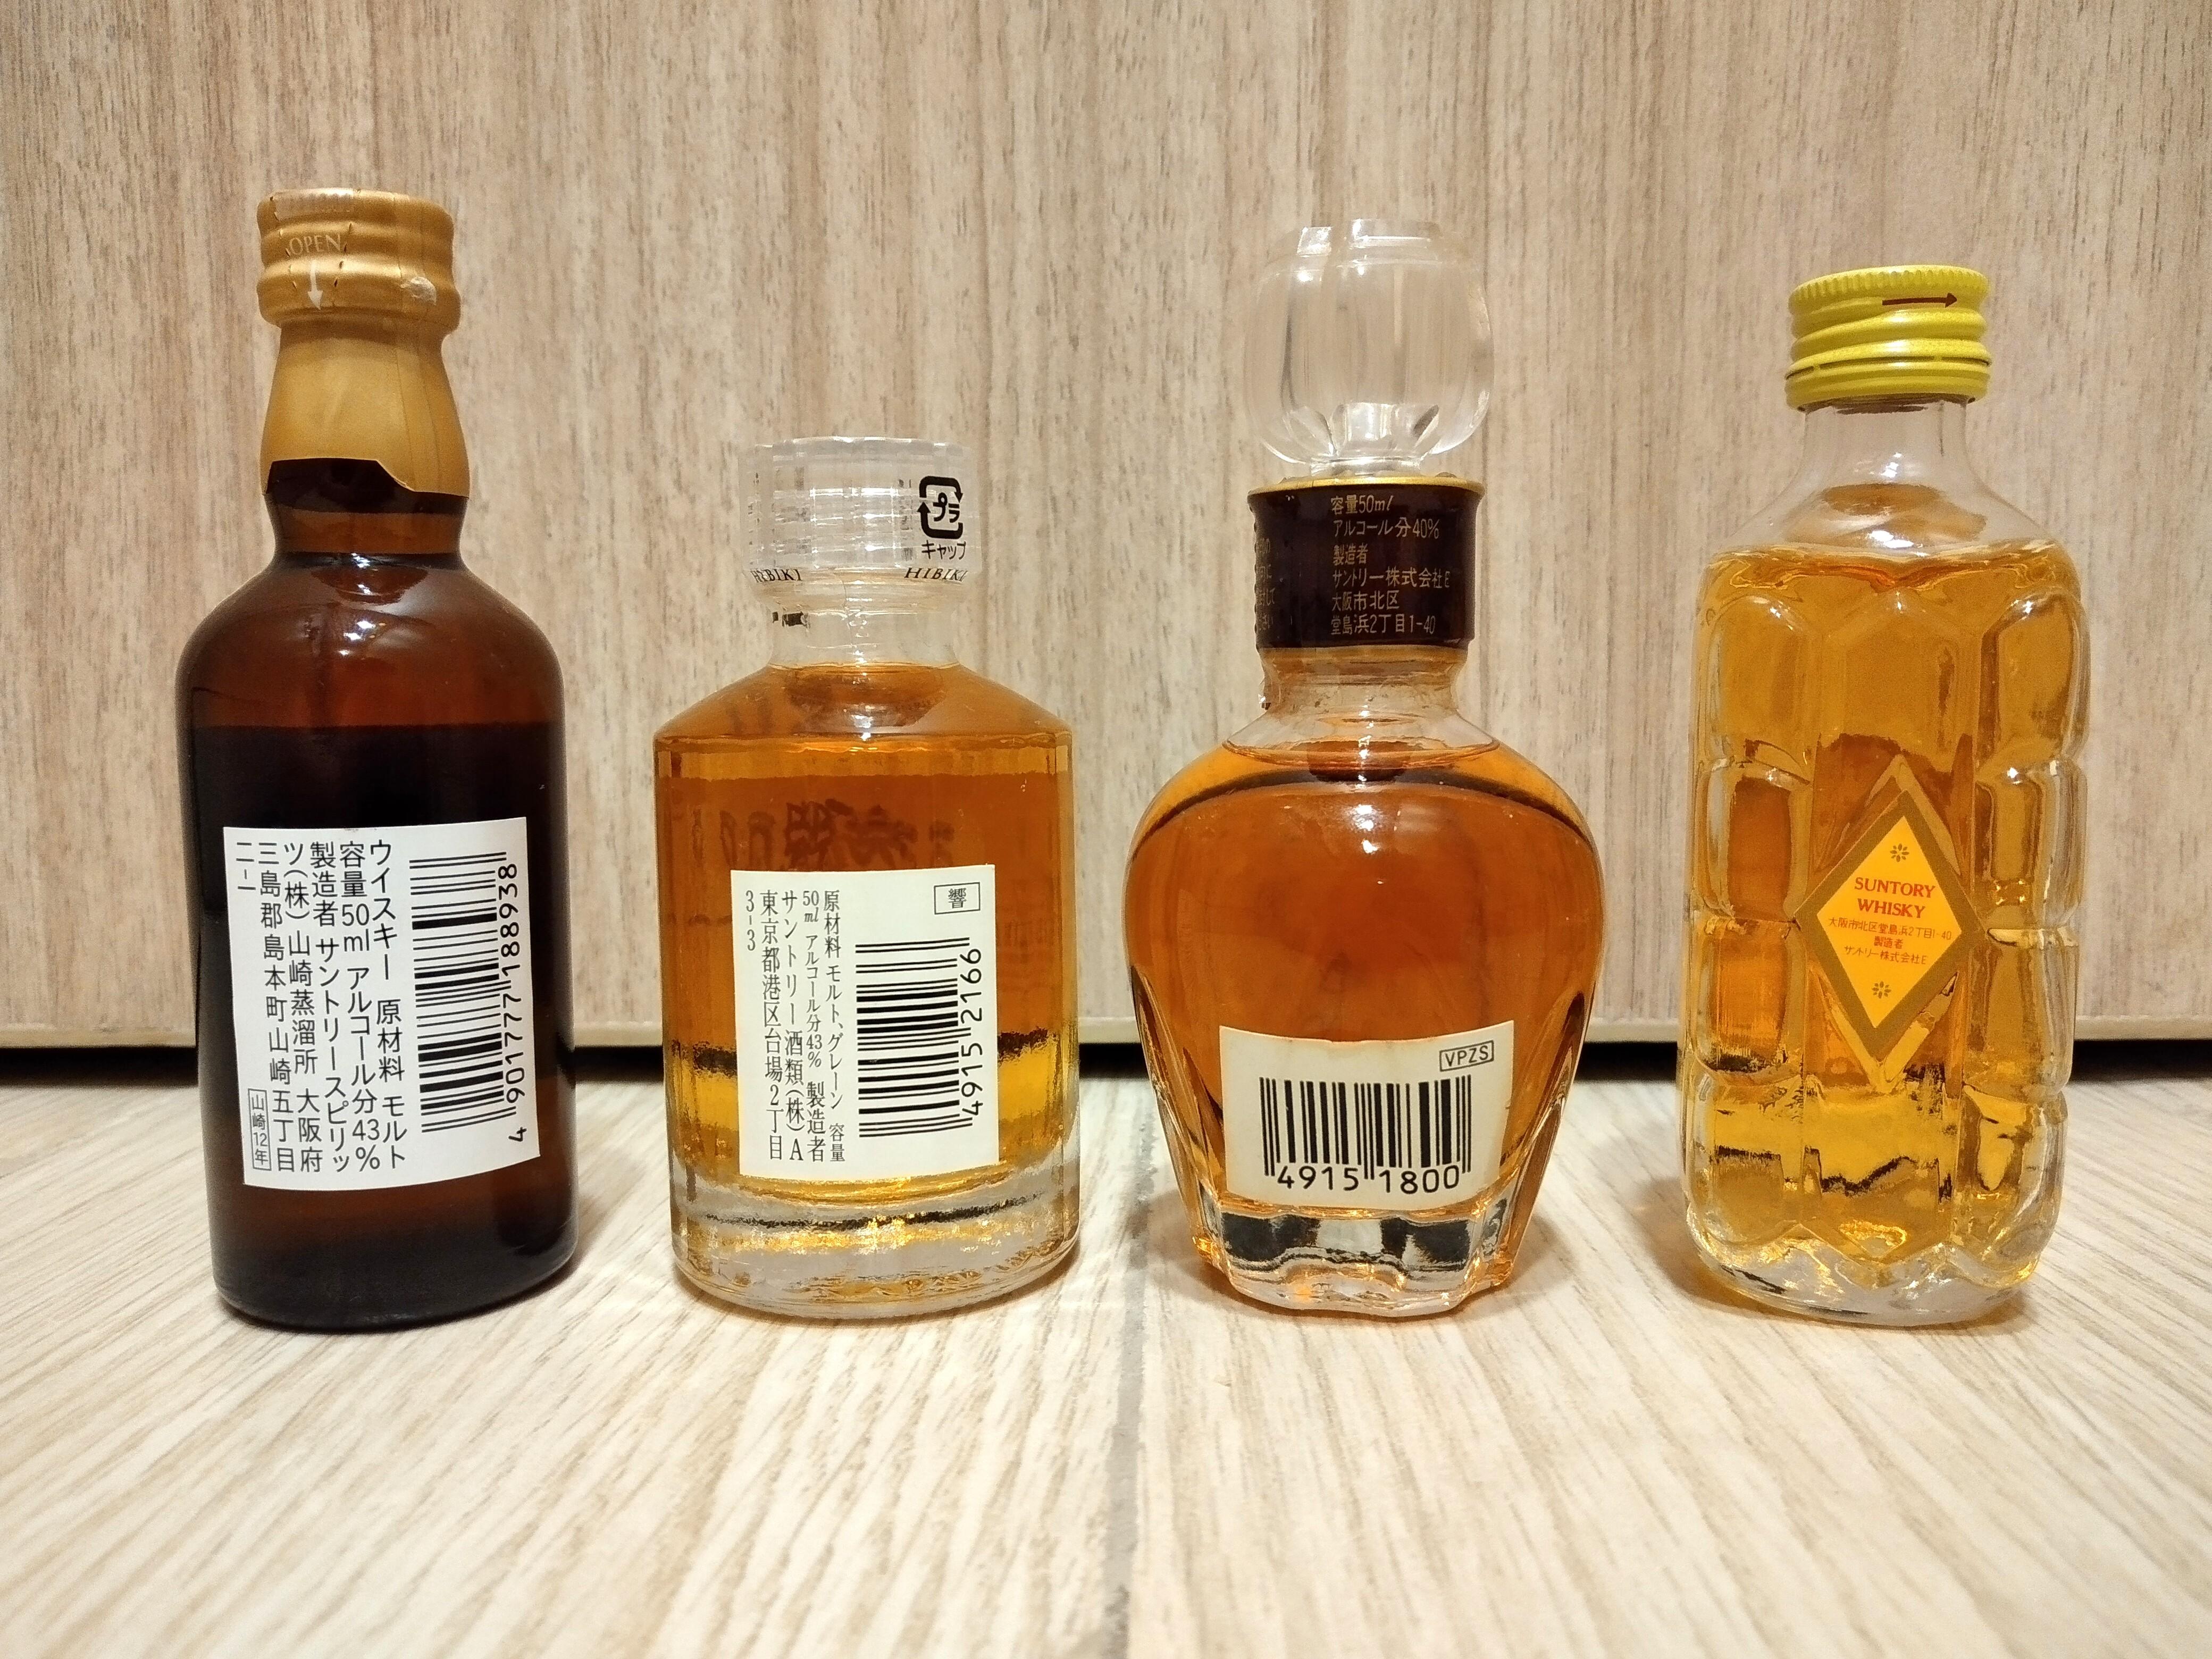 日本三得利經典威士忌4酒版組合】 山崎12 響17 VSOP白蘭地角瓶(1)山崎 